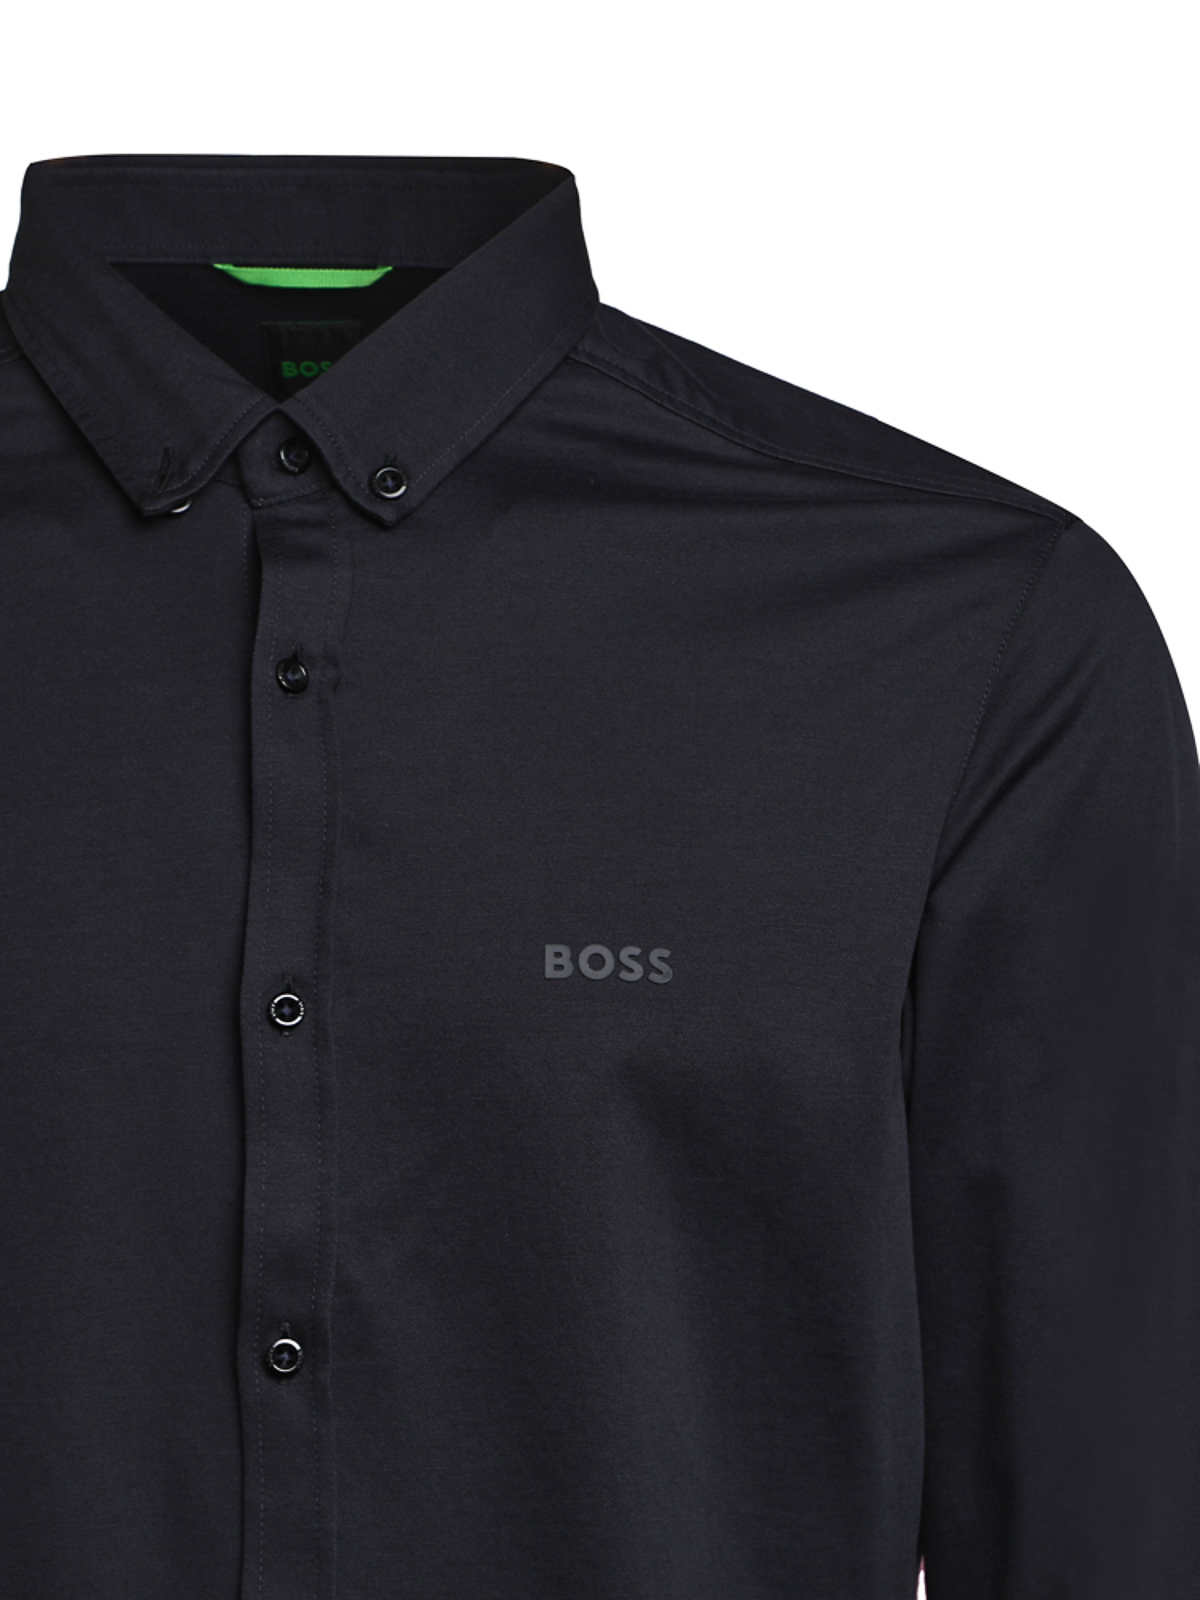 Camisas Hugo Boss - Camisa - - 50477289402 tienda online